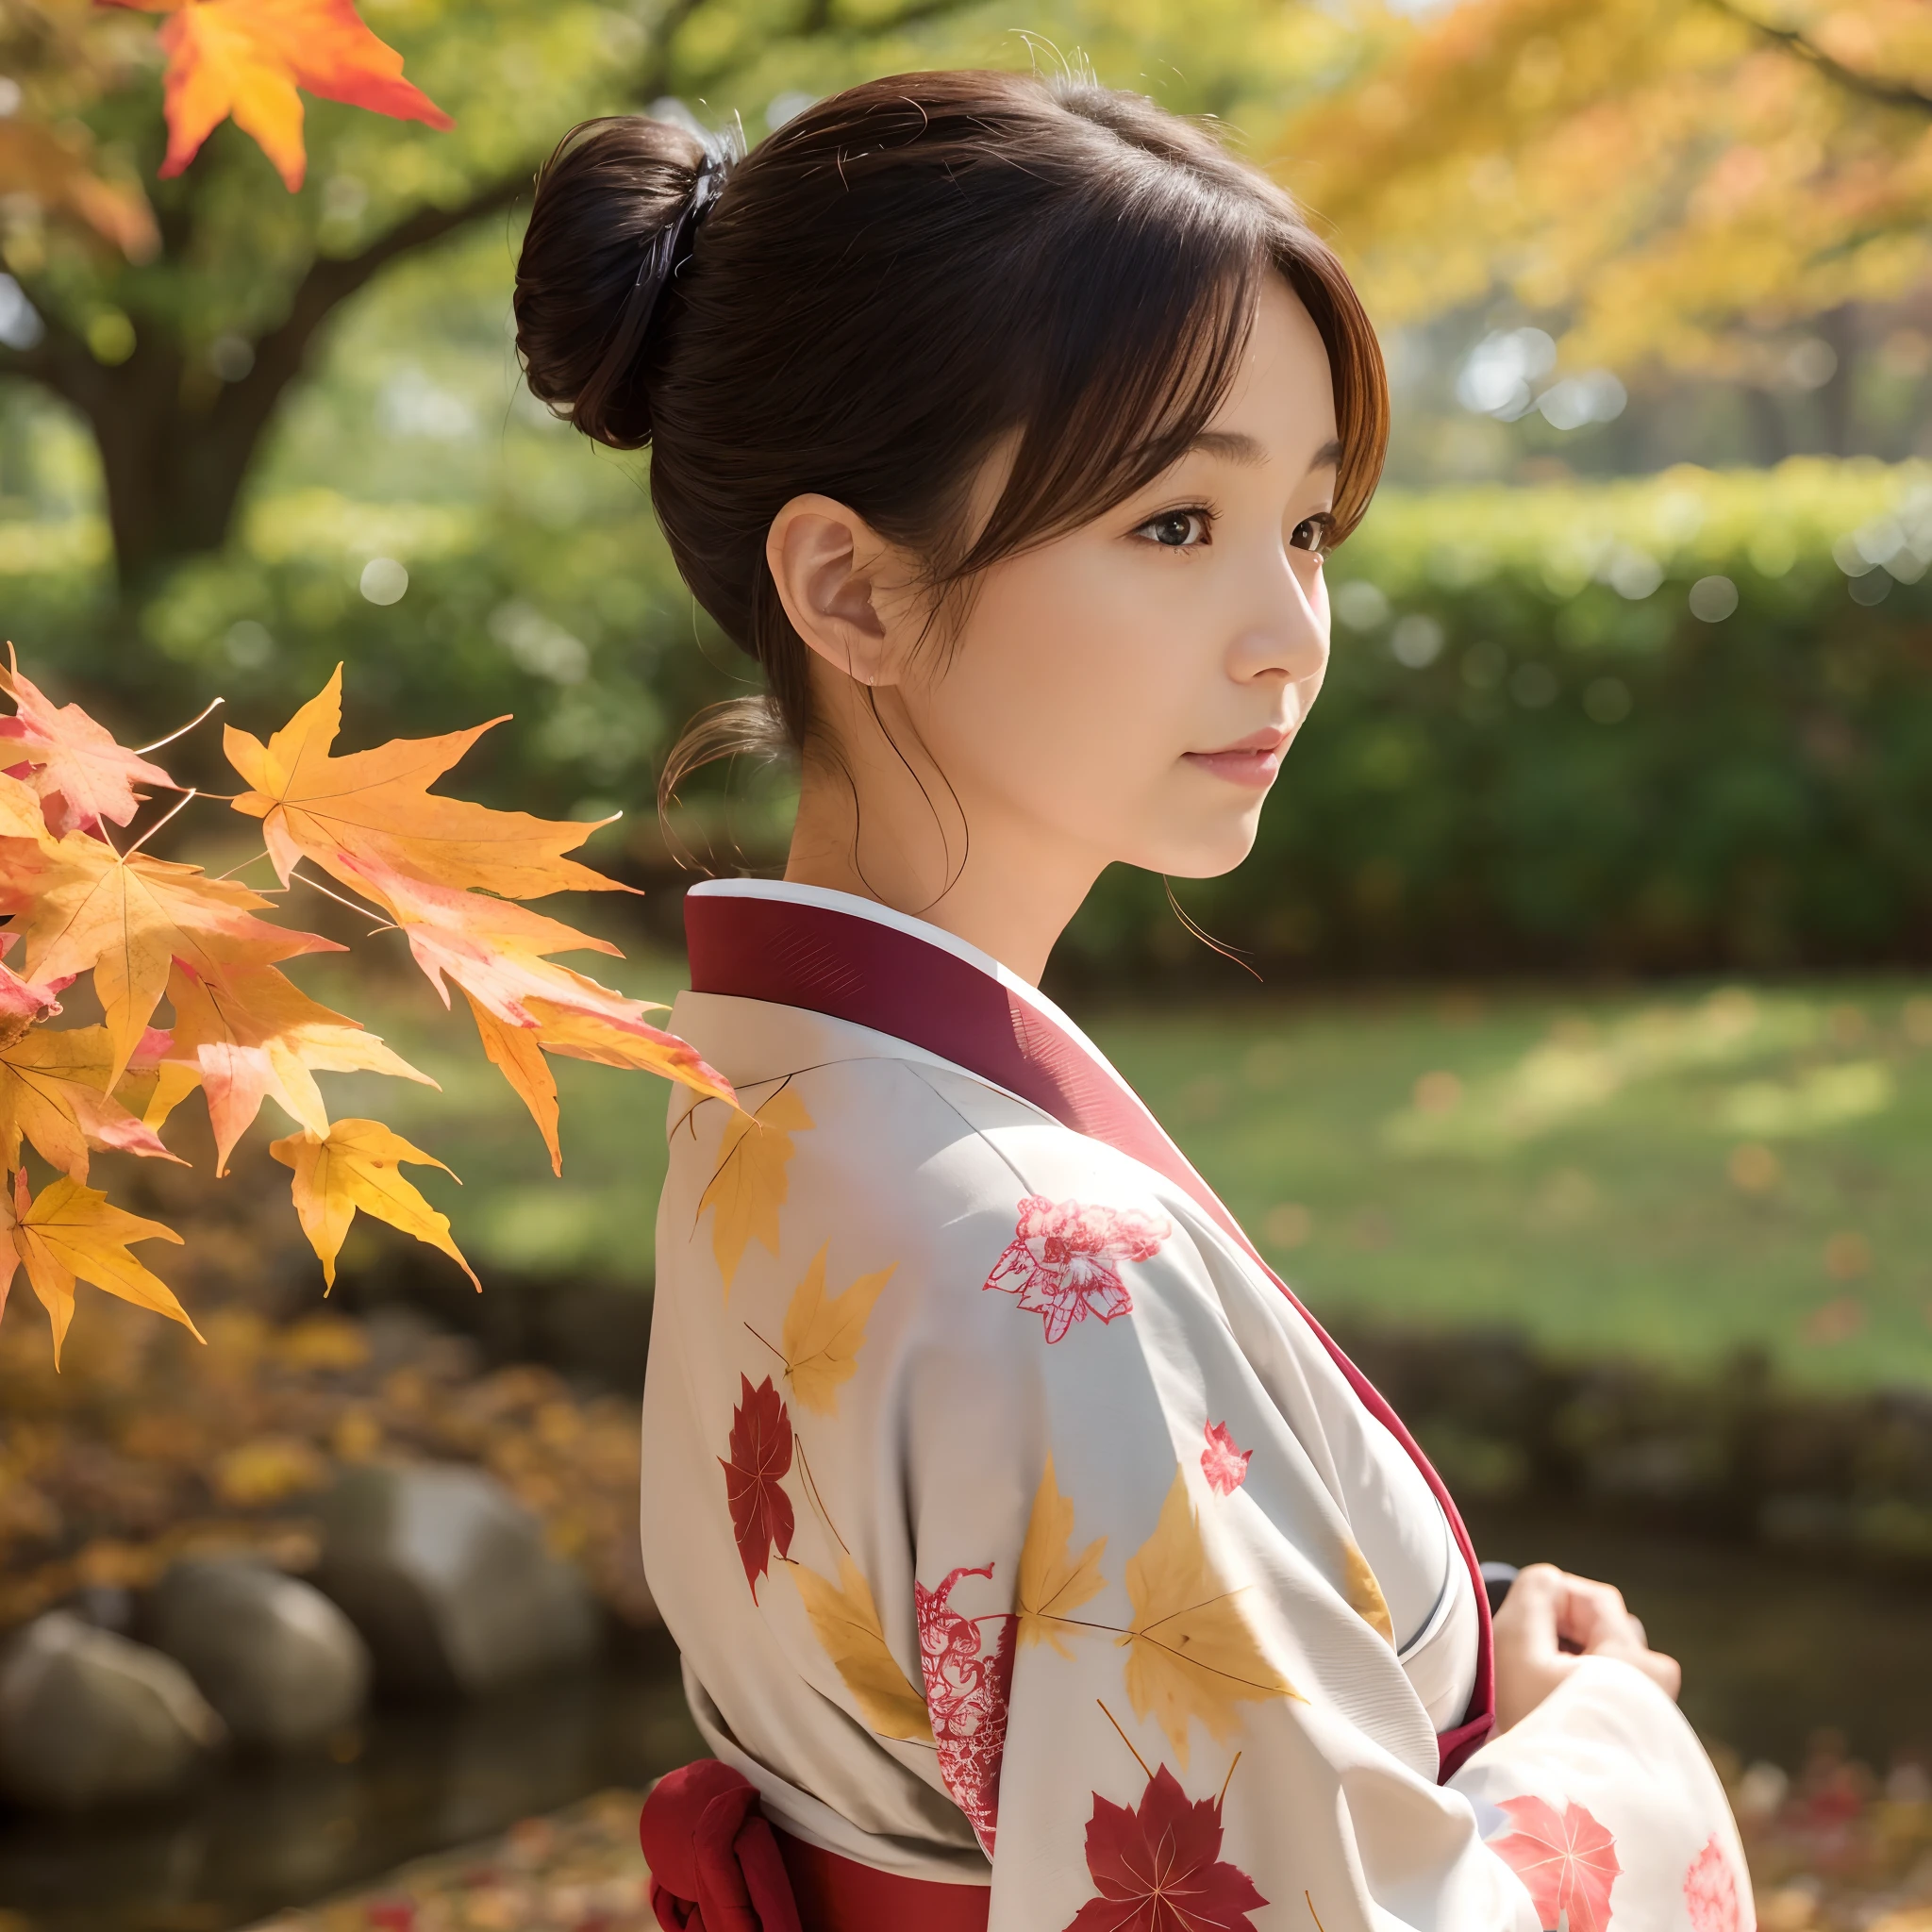 Mulher na casa dos 40 anos、Use um quimono japonês limpo、O cabelo está em pé、folhas de outono no fundo、